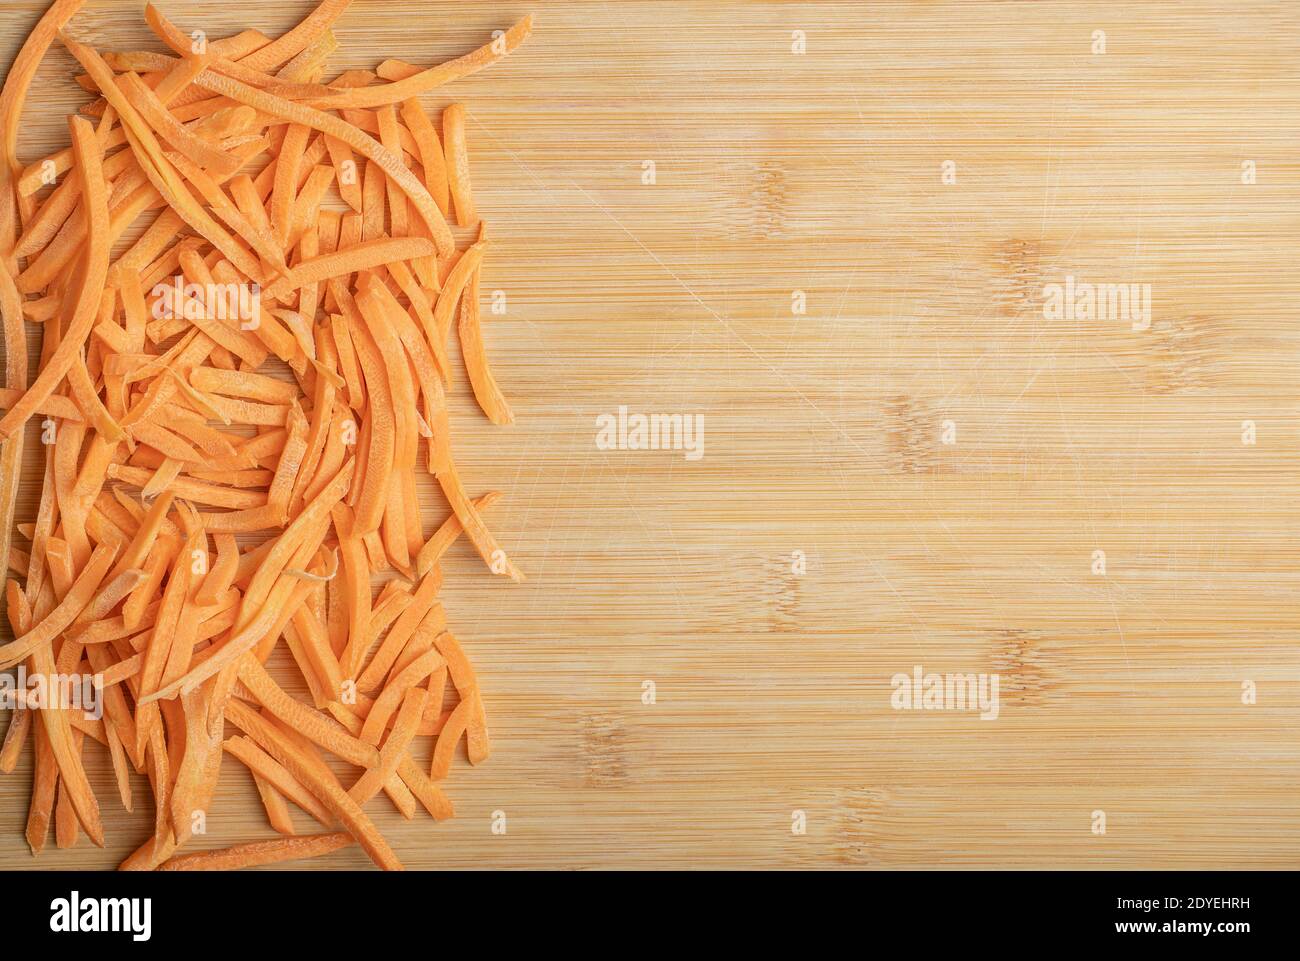 Julienne Karotten auf dem Holzhintergrund Stockfoto